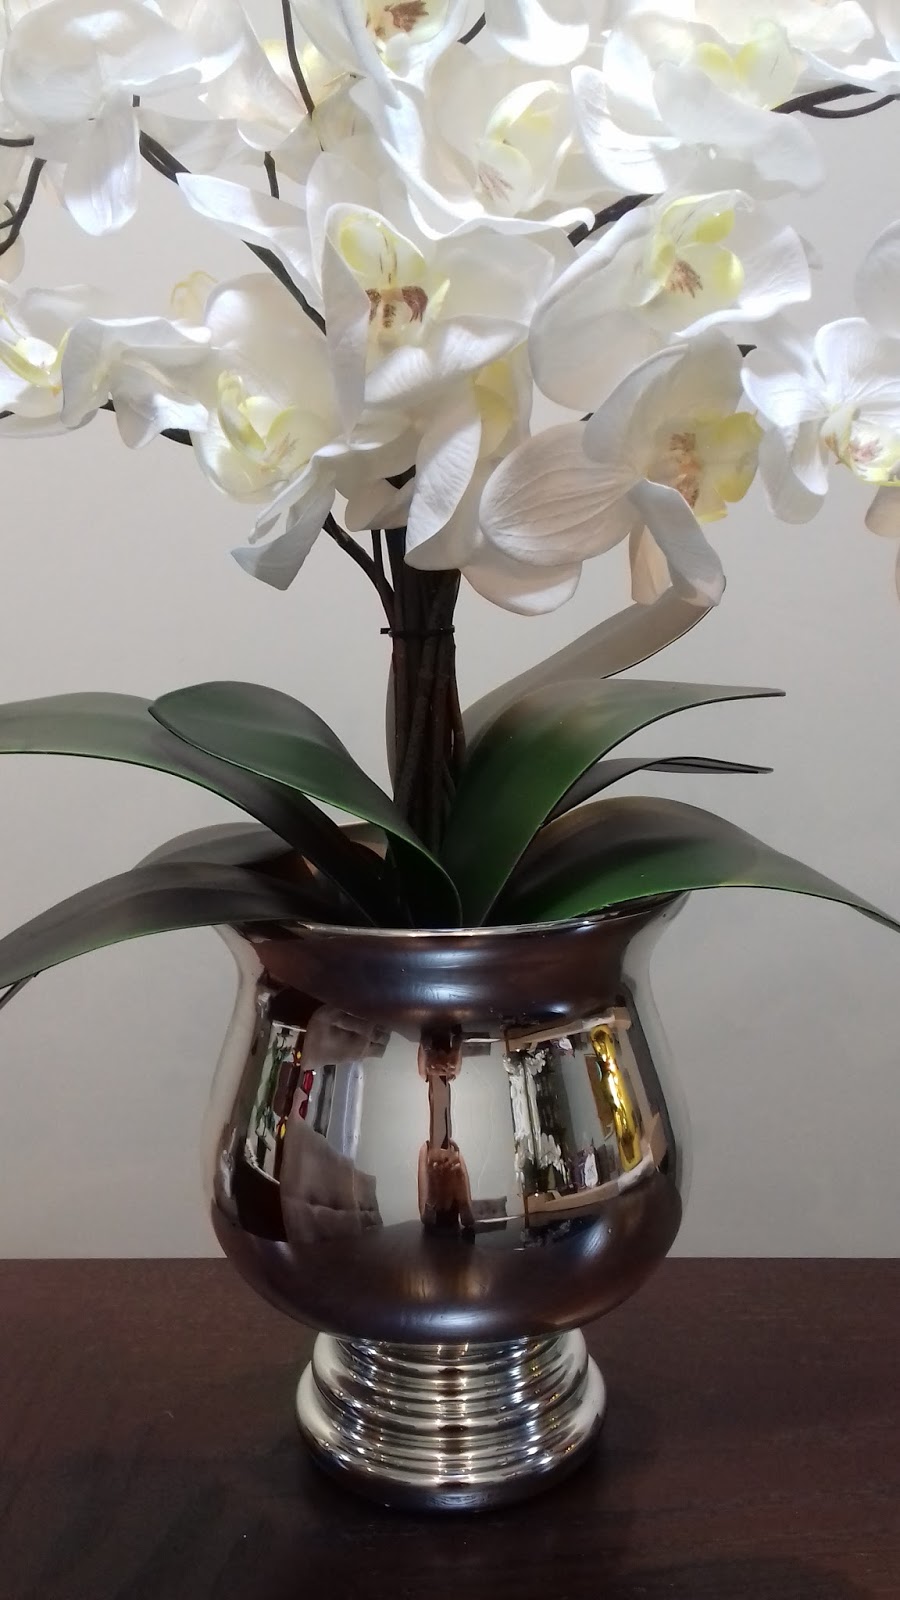 Samara Flores: Orquídeas pink no vaso espelhado dourado e orquídeas brancas  no vaso prata espelhado